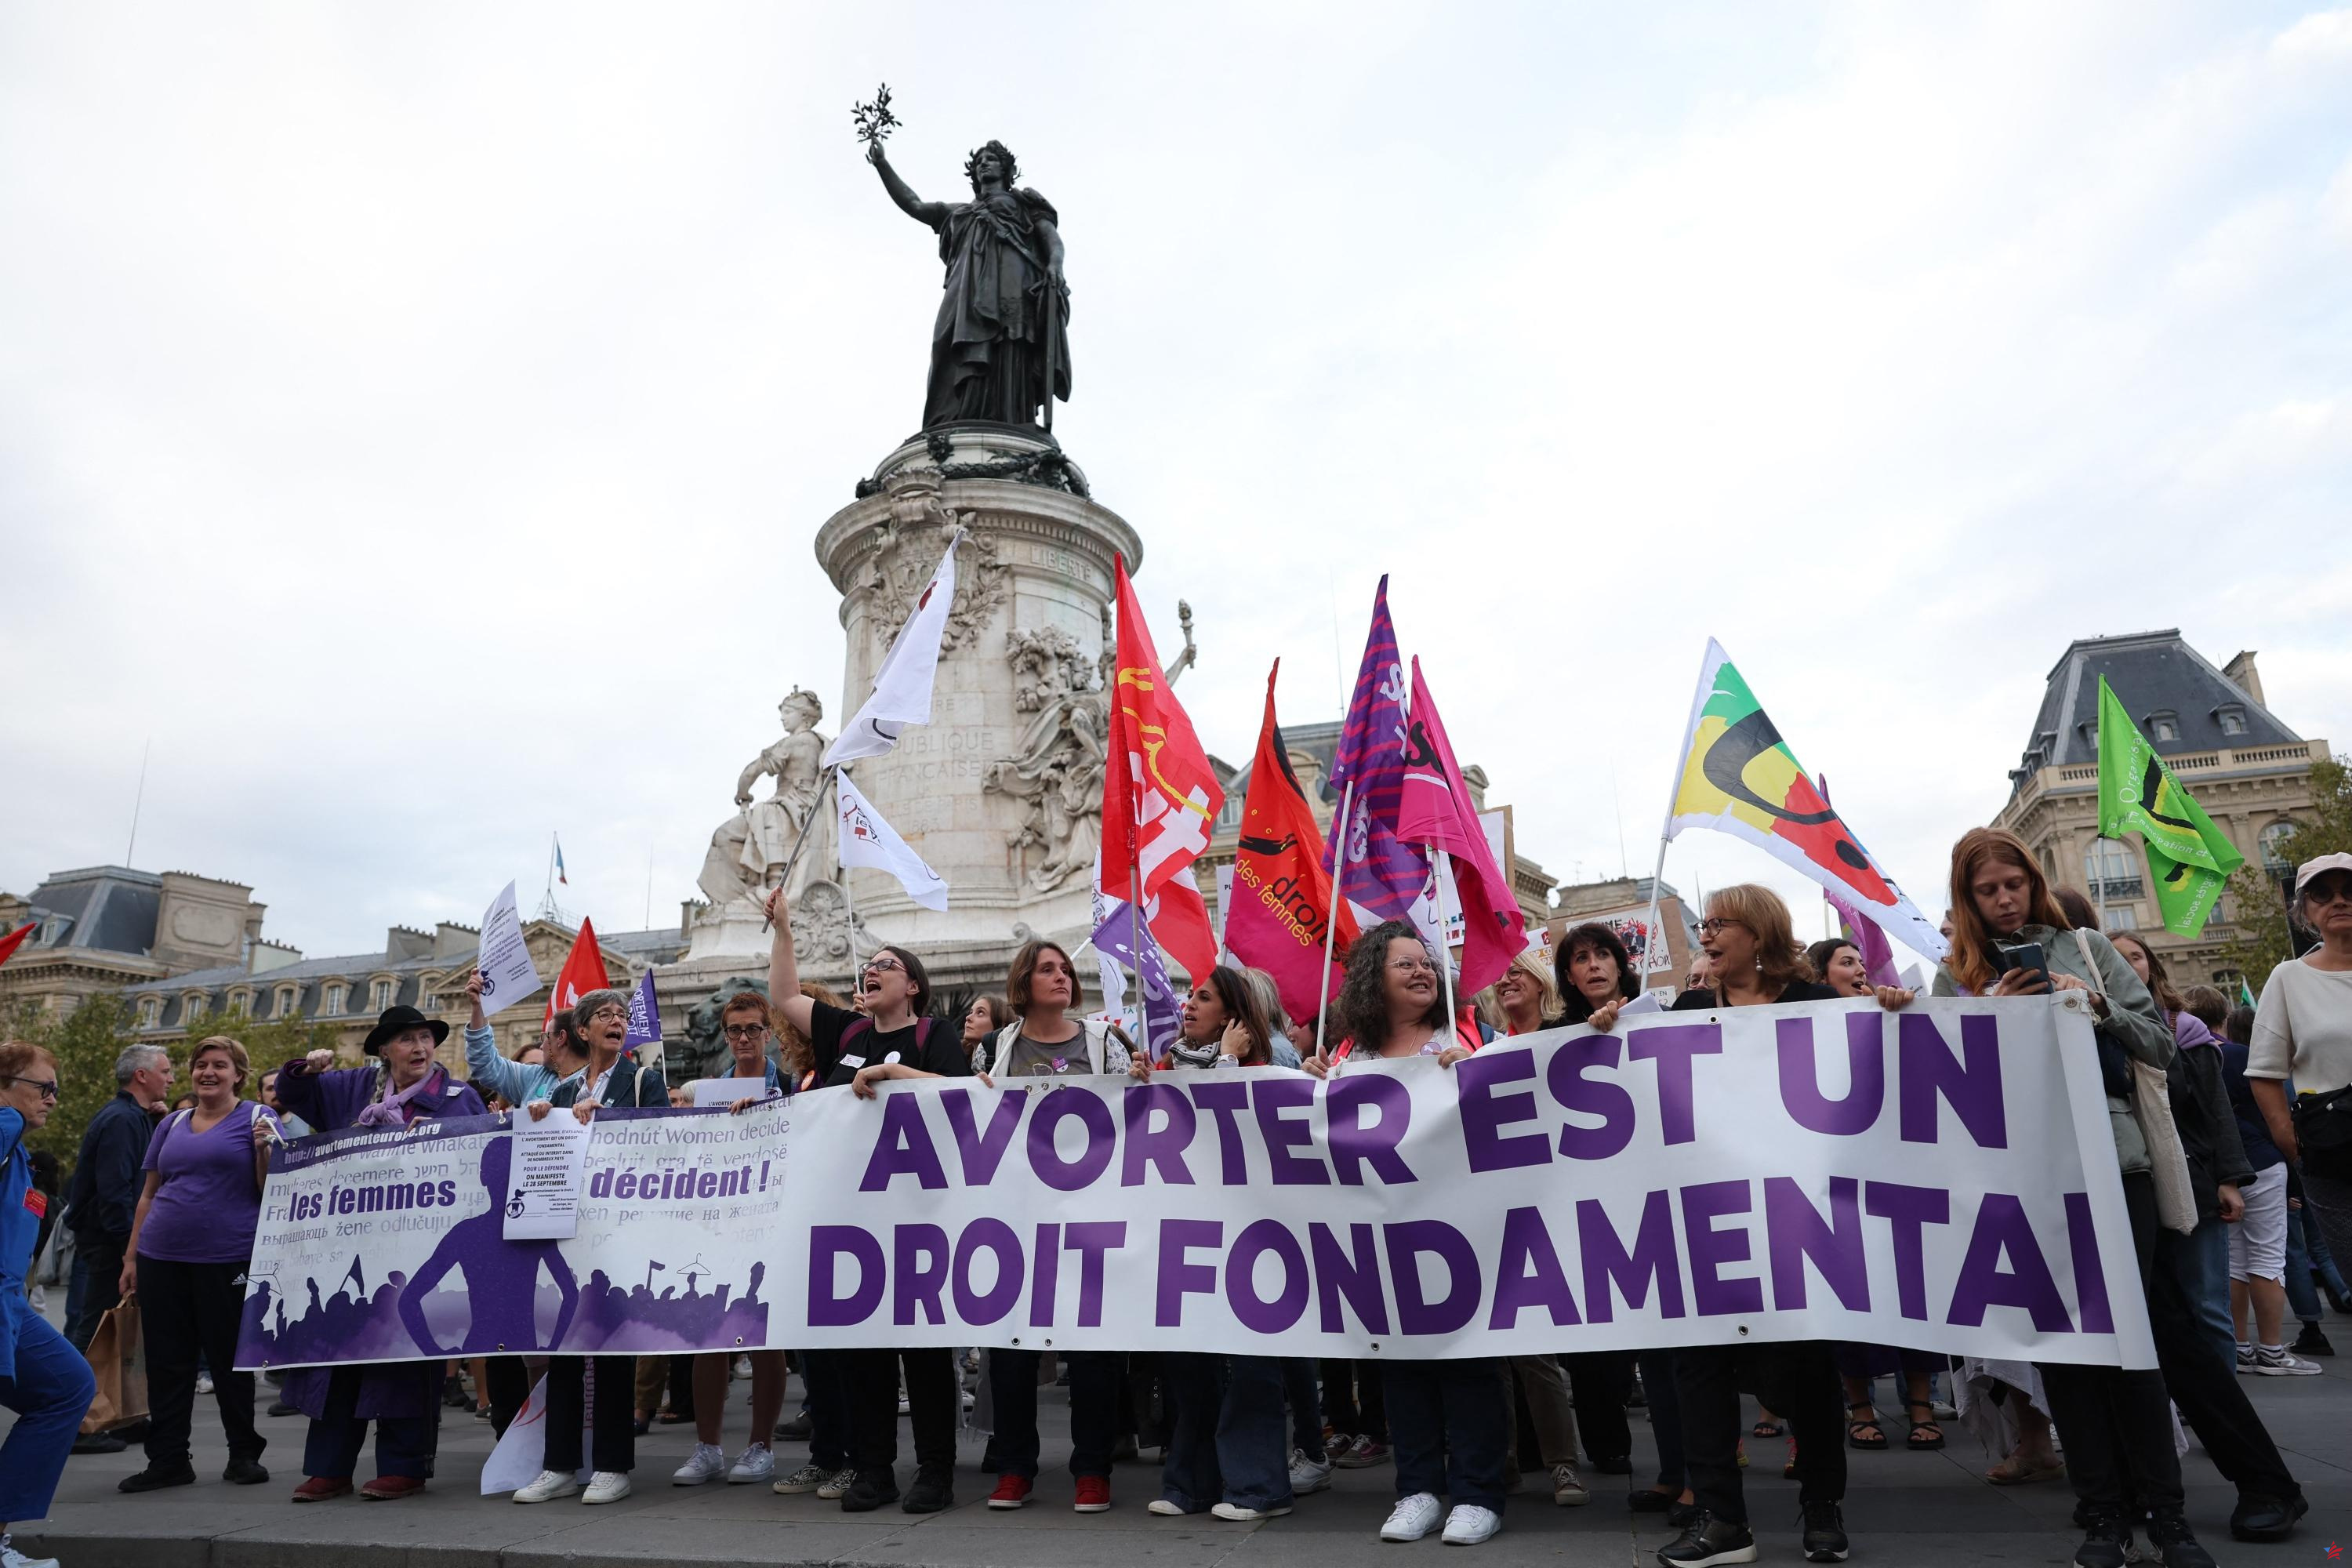 IVG en la Constitución: ¿cuáles son las cifras del aborto en Francia?